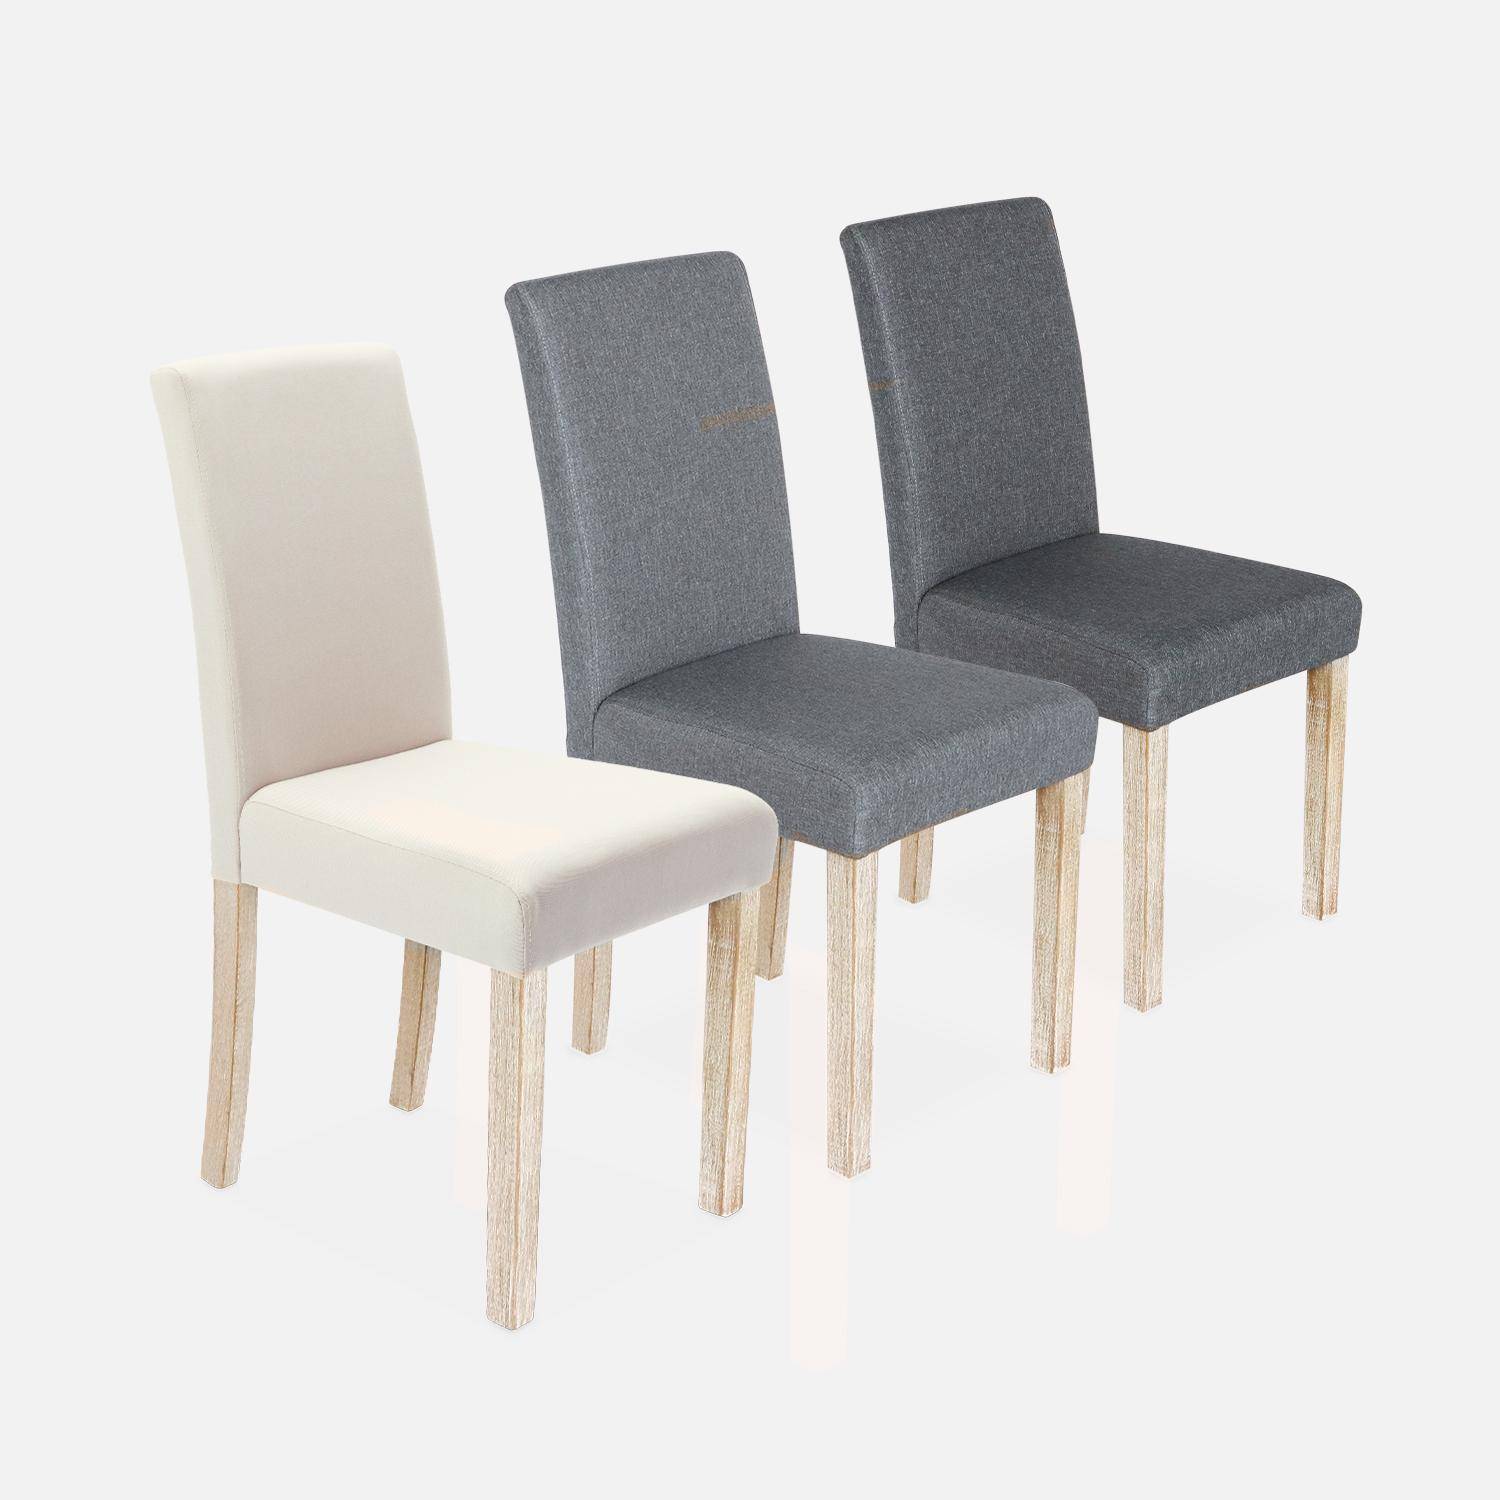 Lote de 4 sillas - Rita - sillas de tela, patas madera lacada  Photo6